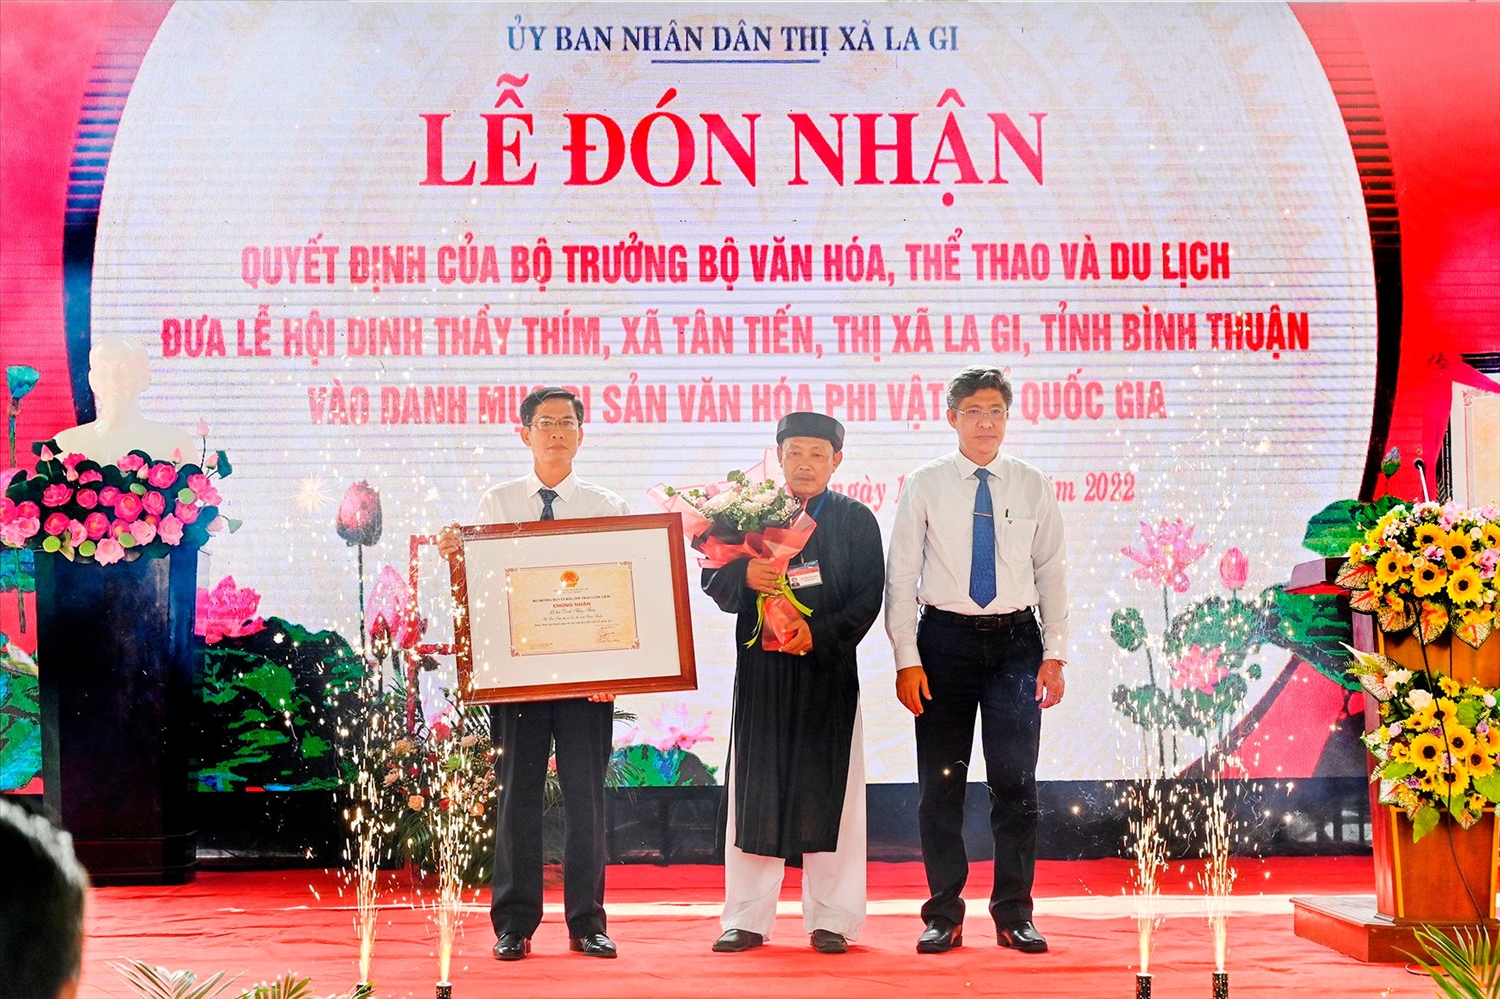 Phó Chủ tịch UBND tỉnh Nguyễn Minh trao quyết định của Bộ trưởng Bộ VHTT&DL đưa Lễ đón nhận Lễ hội Dinh Thầy Thím vào danh mục Di sản văn hóa phi vật thể quốc gia cho thị xã La Gi